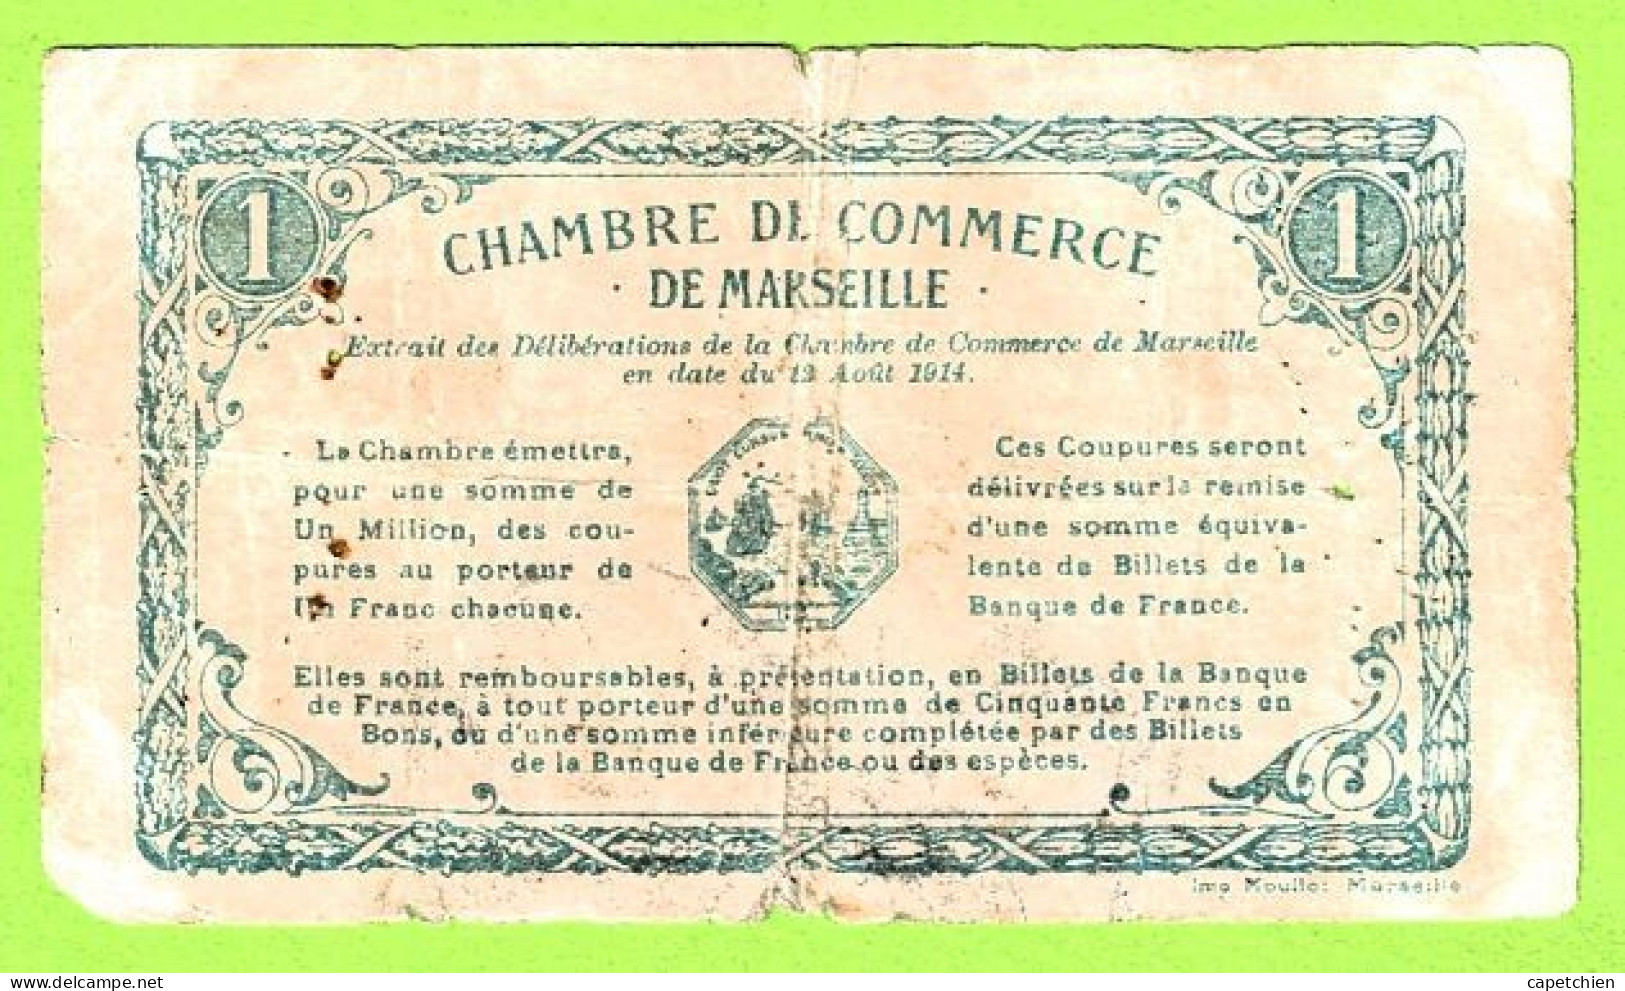 FRANCE / CHAMBRE De COMMERCE / MARSEILLE / 1 FRANC / 13 AOUT 1914 / N° 115236 / SERIE B - Chambre De Commerce